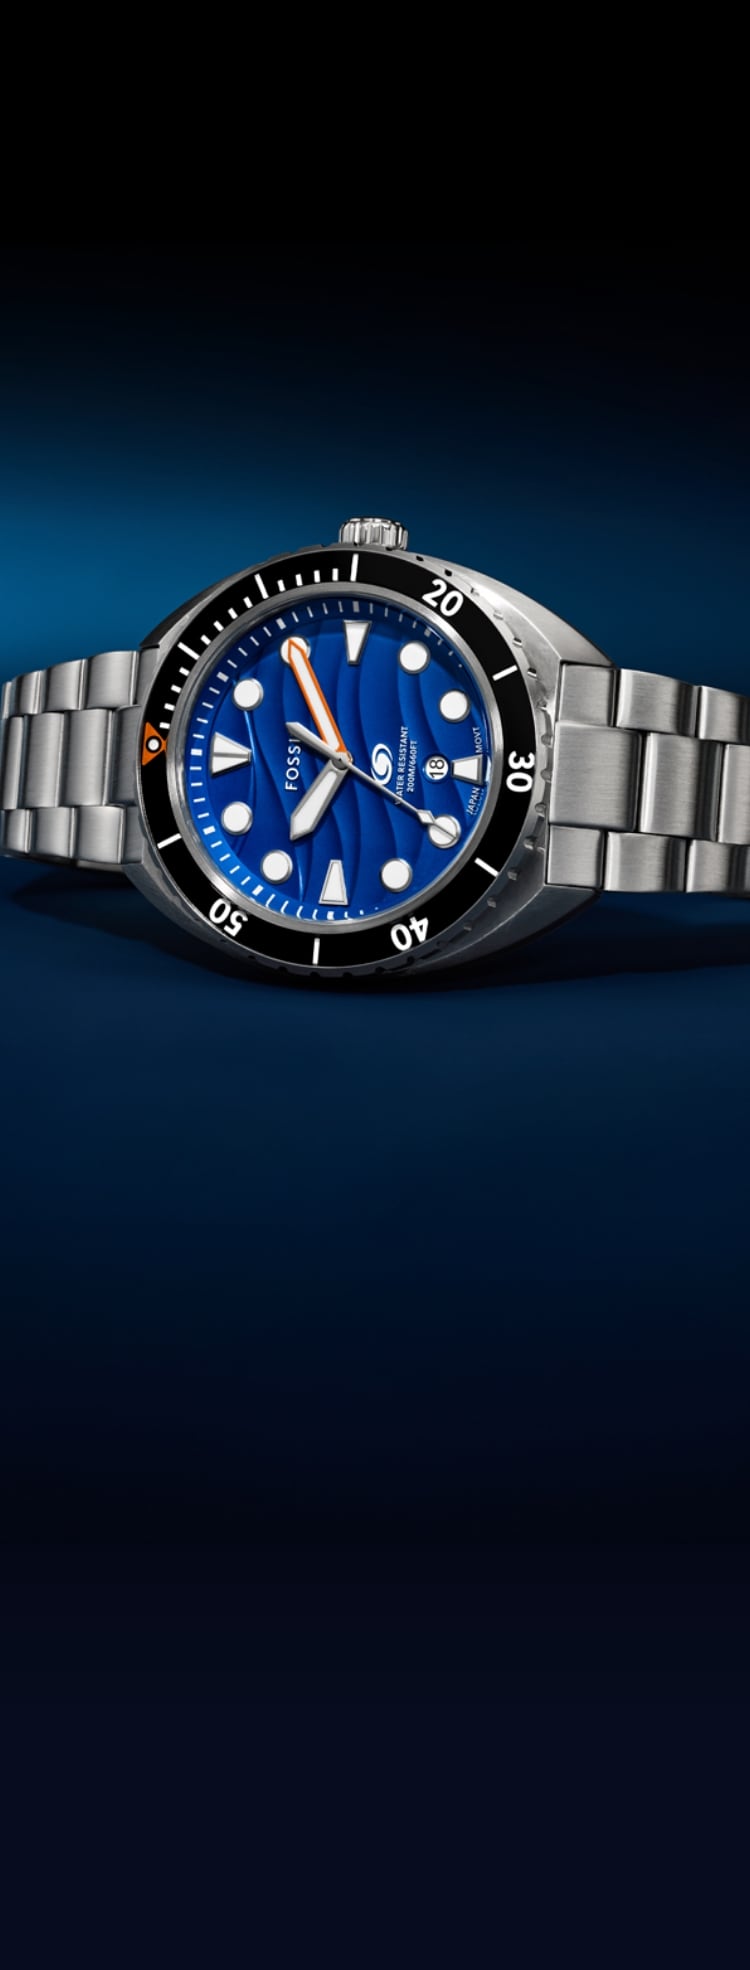 La montre Breaker Dive en acier inoxydable avec un cadran bleu entourée de bulles d’eau.